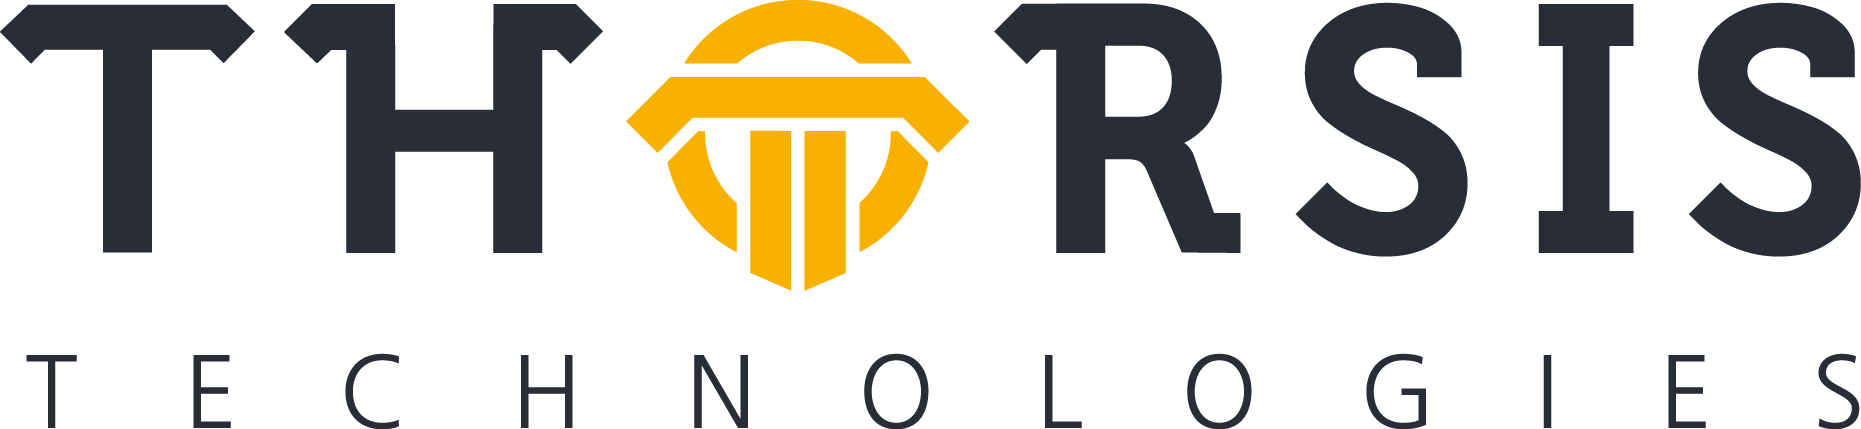 Thorsis logo